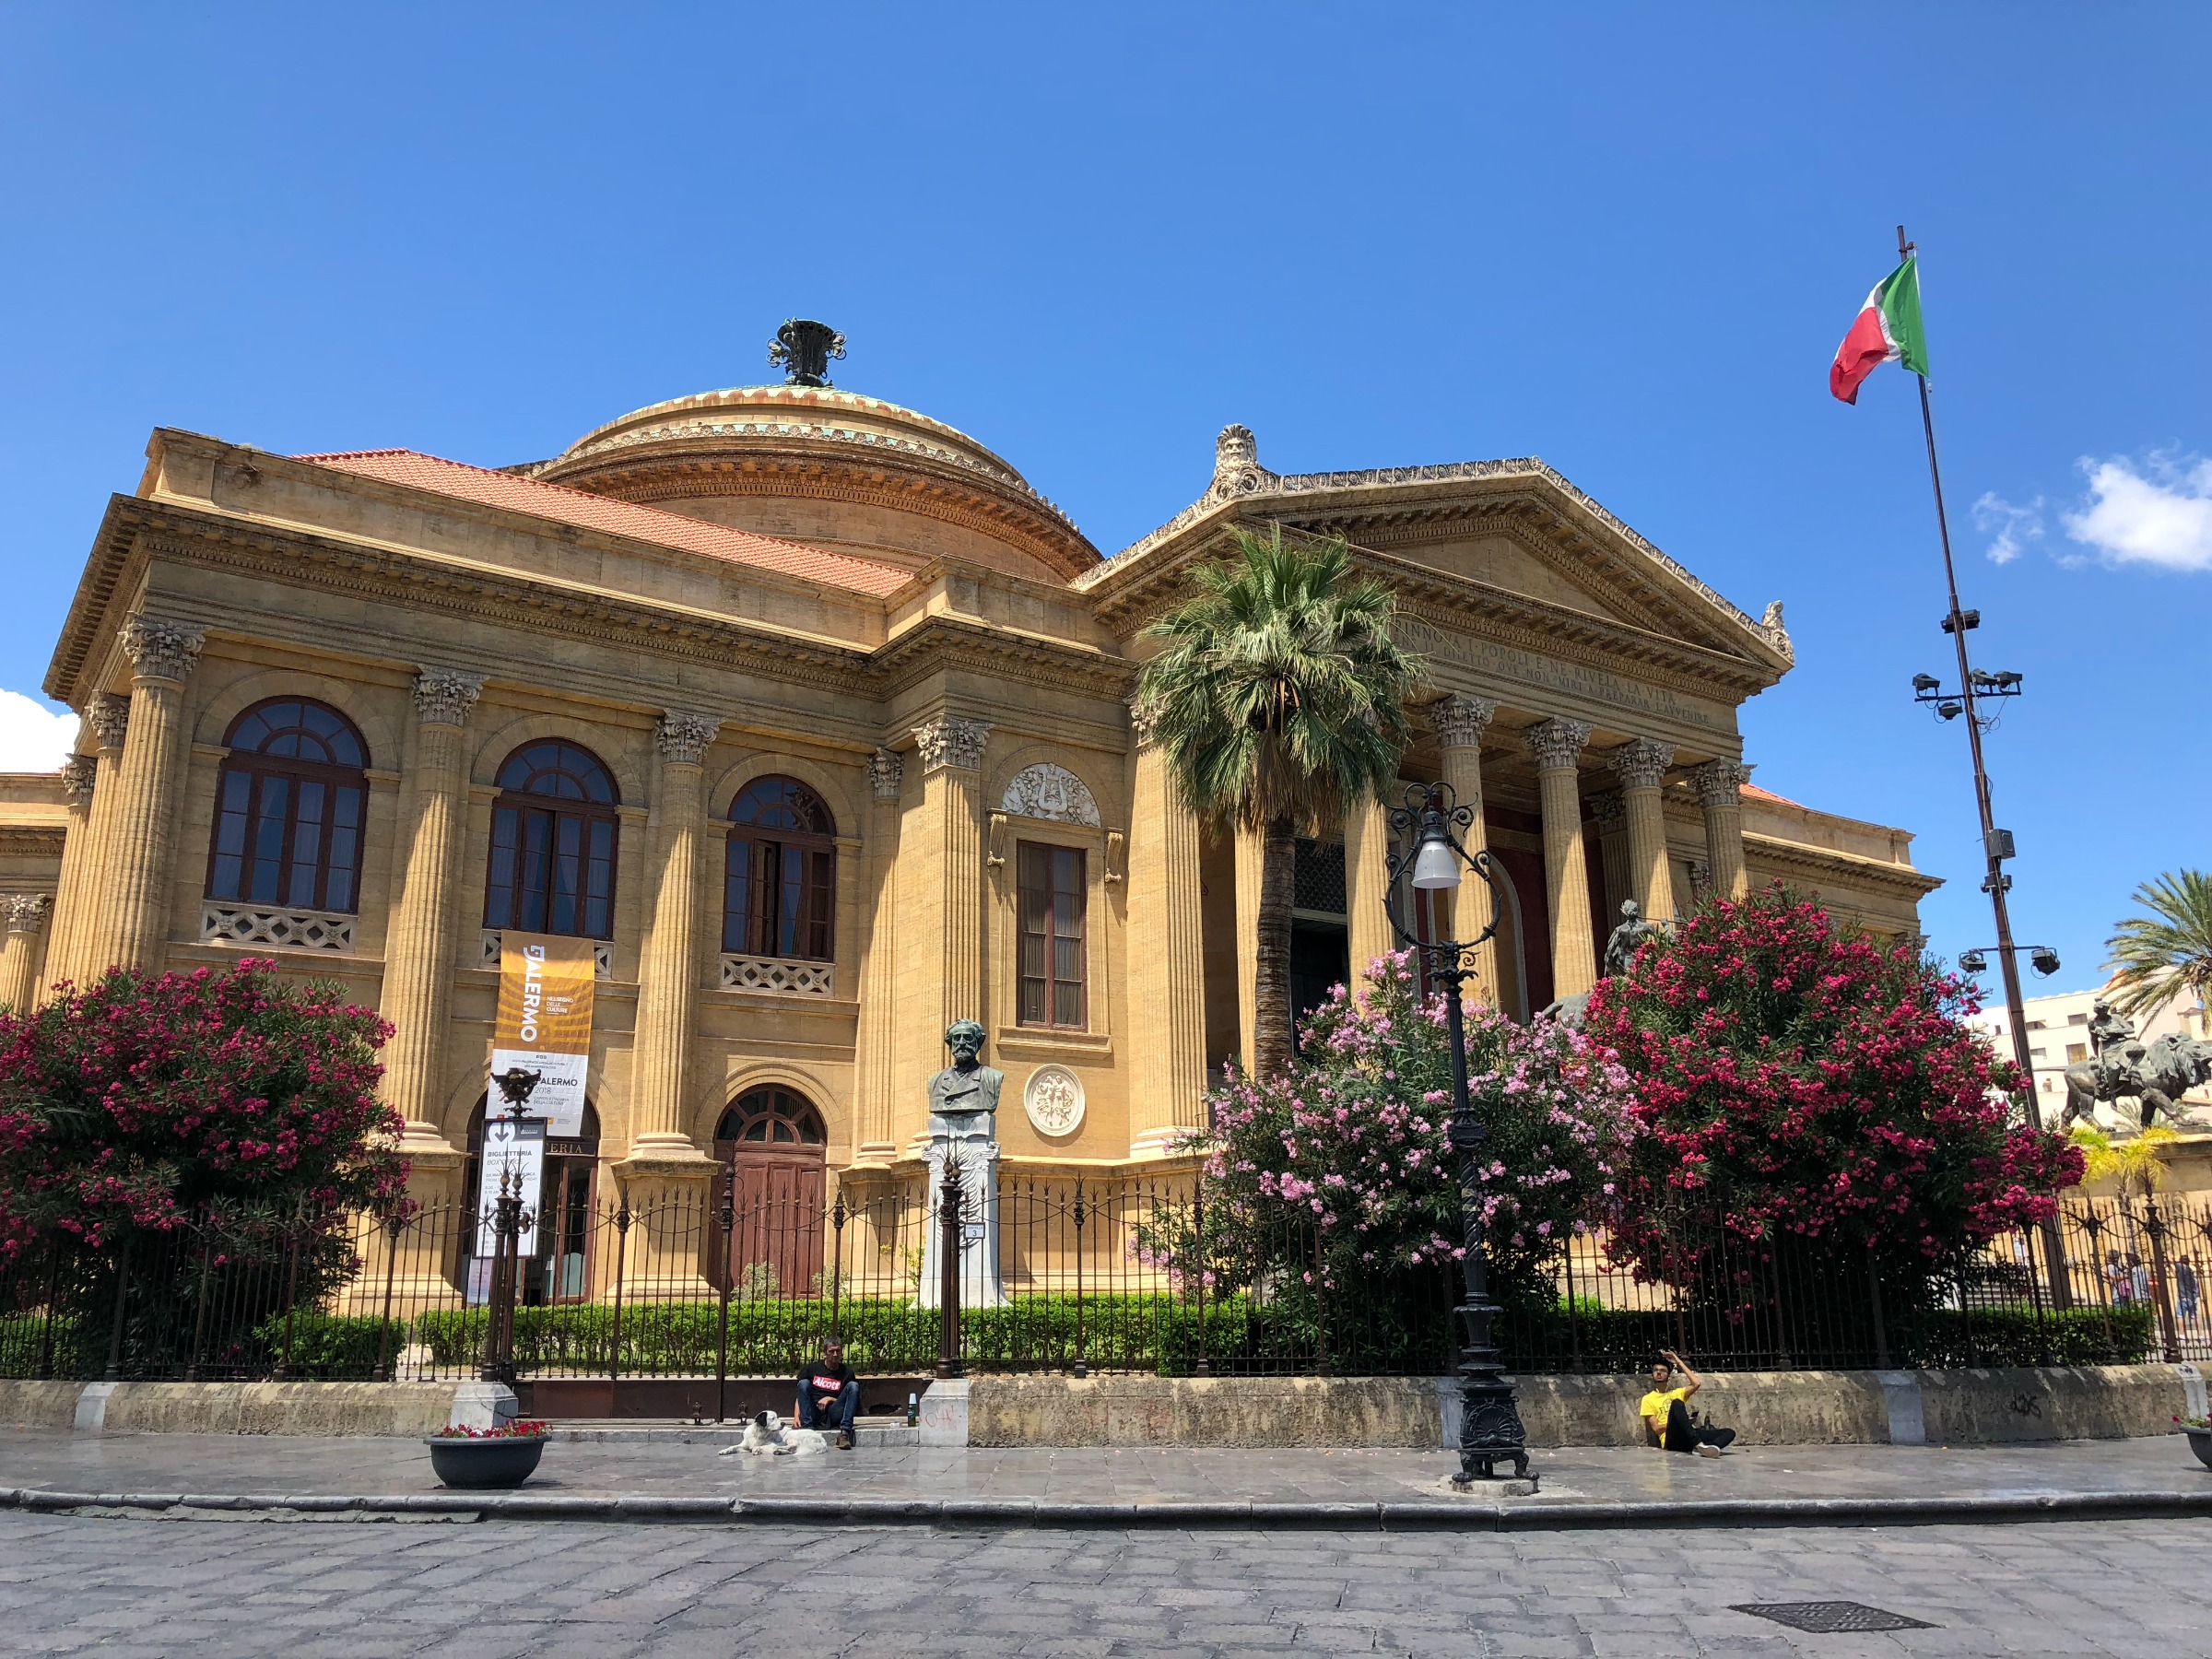 Palermo opera